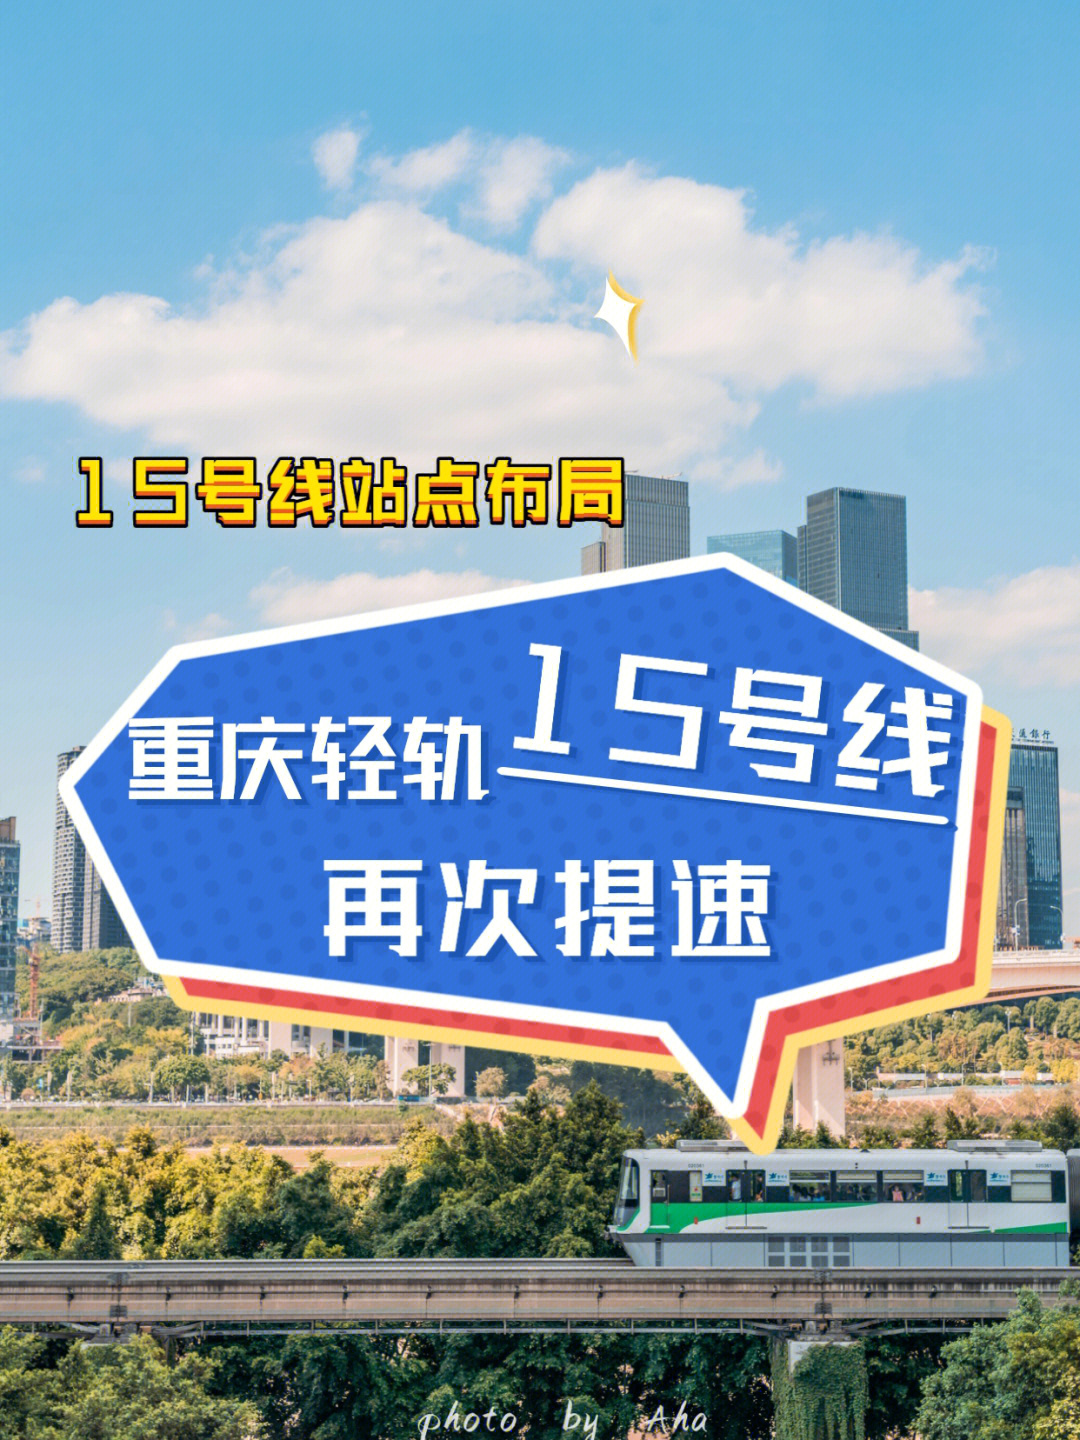 重庆15号线再次提速途径地区更多利好60